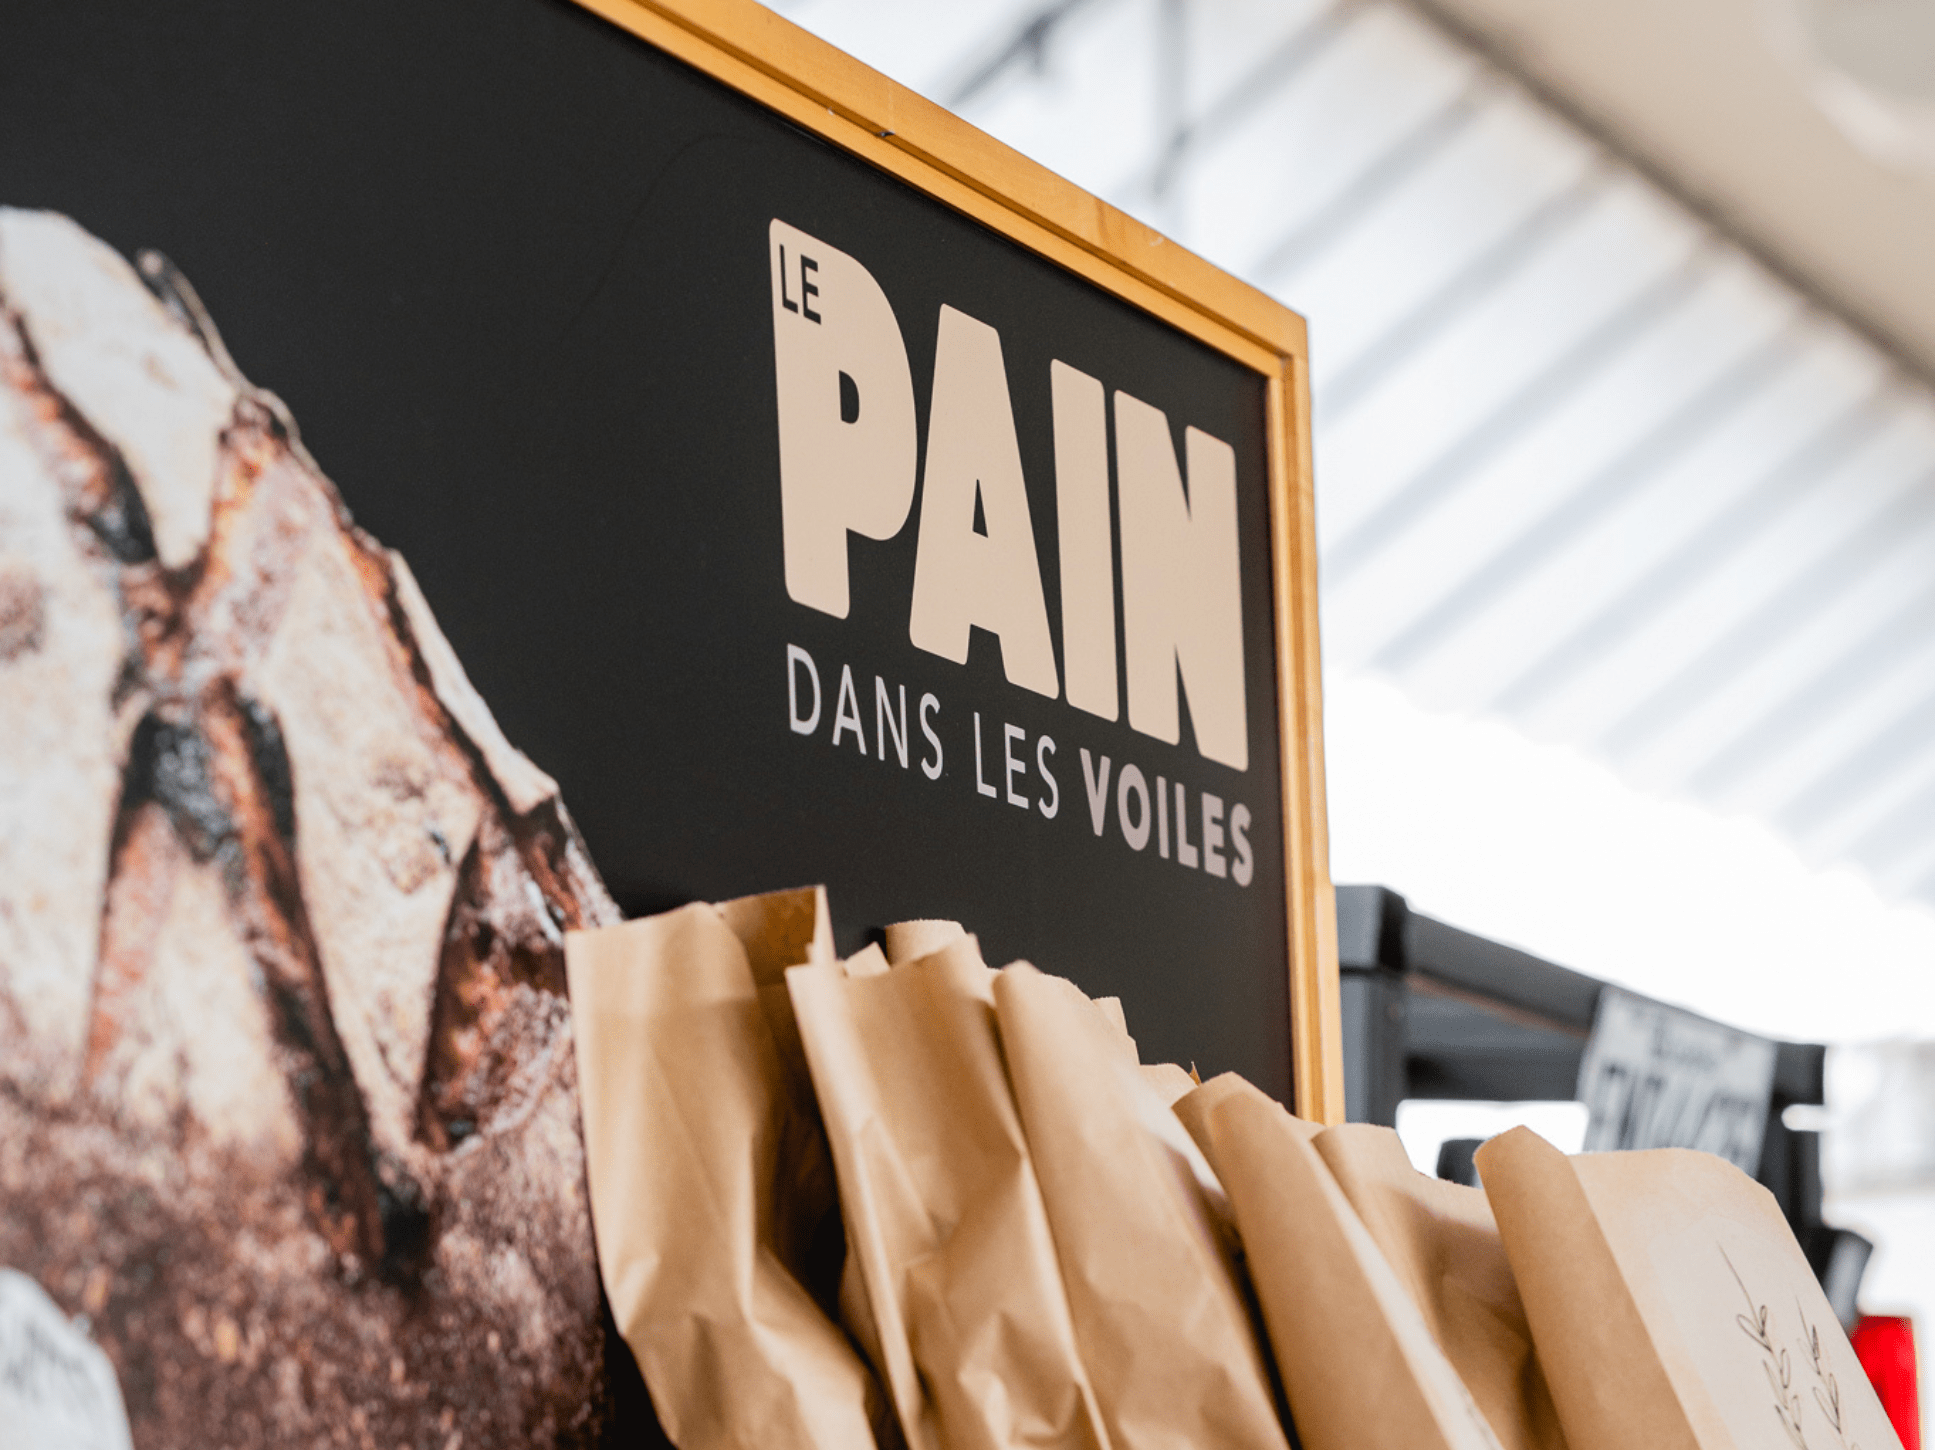 Le Pain dans les voiles Bakery, Boulangers & pâtissiers